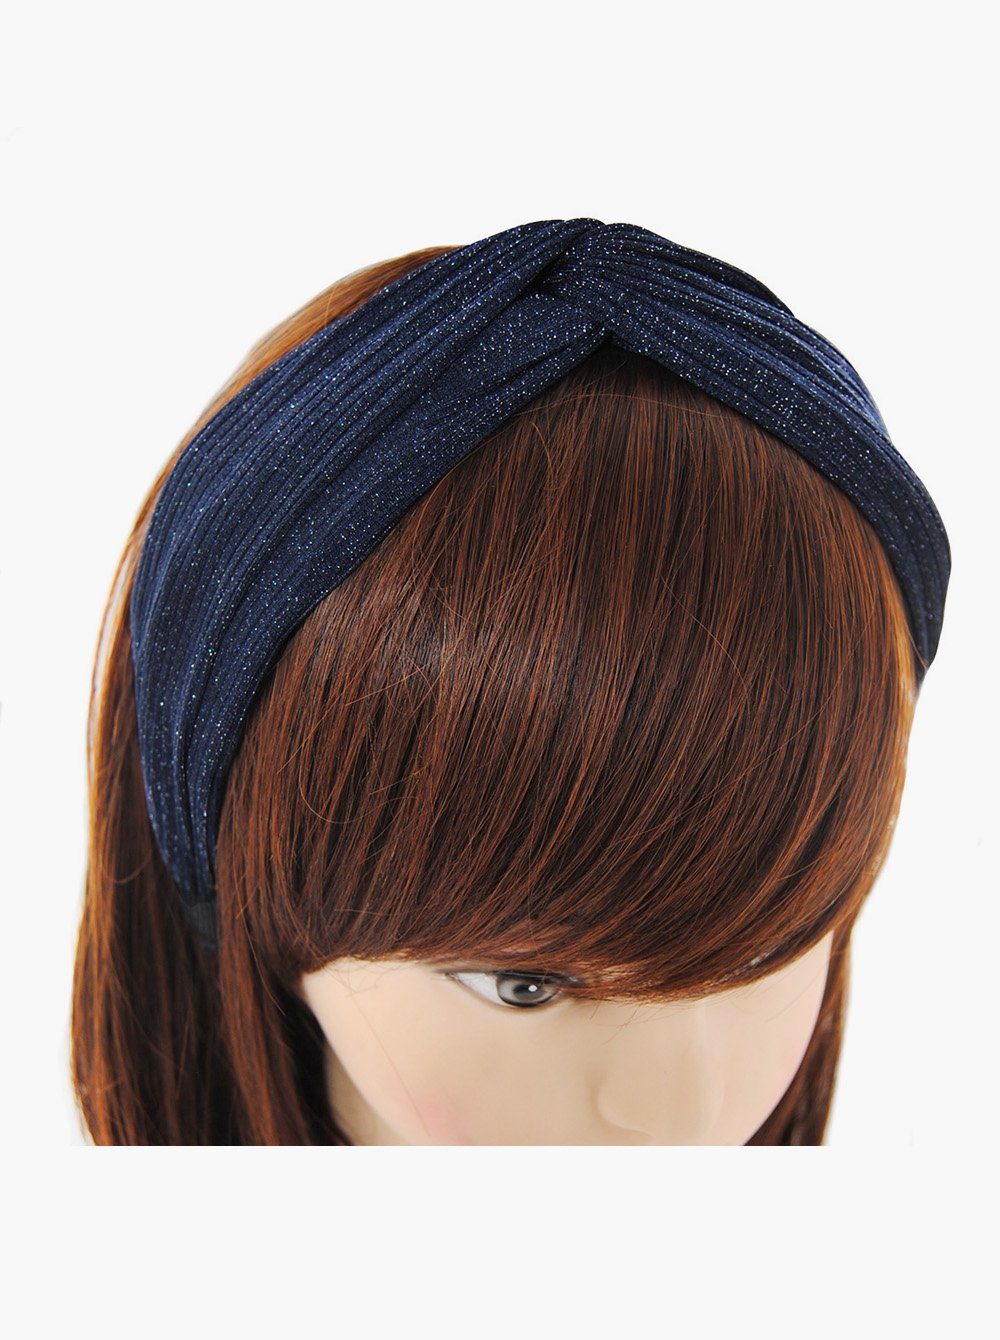 Haarreif Navyblau Damen Stoff, Haareifen axy mit Vintage glänzender Haarband Knoten und Haarreif